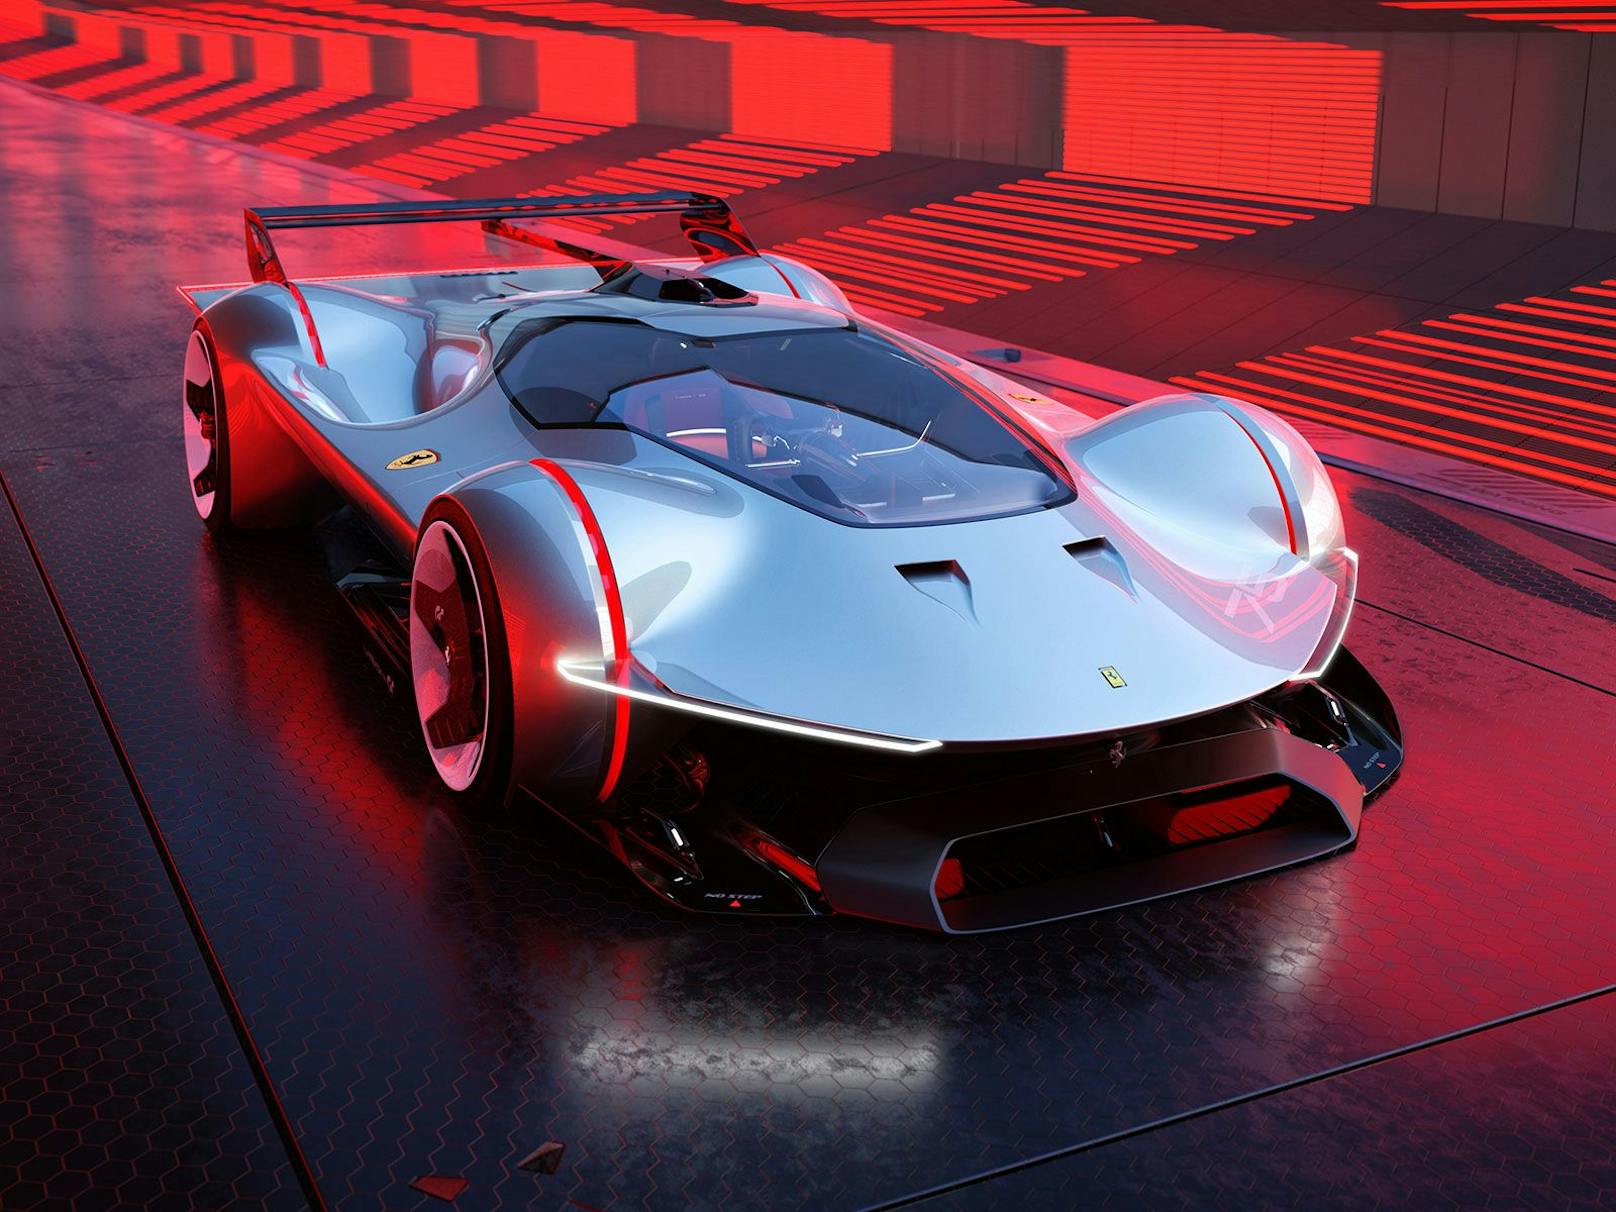 Der Look des Ferrari Vision Gran Turismo ist sehr futuristisch.